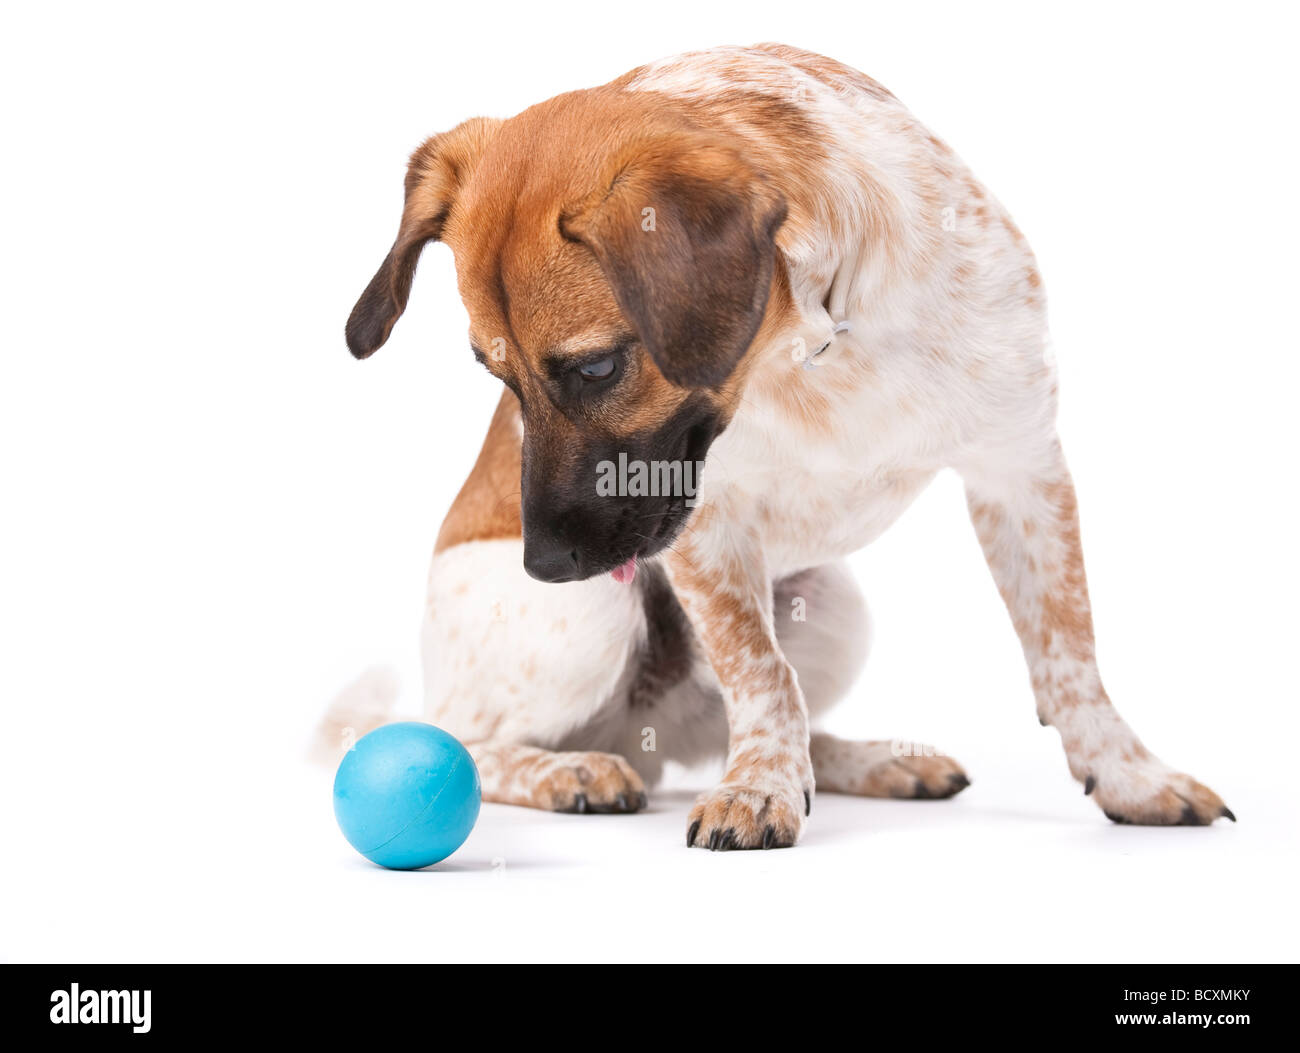 Pequeño perro blanco y marrón, centrándose claramente en una bola azul foto de estudio aislado en blanco Foto de stock